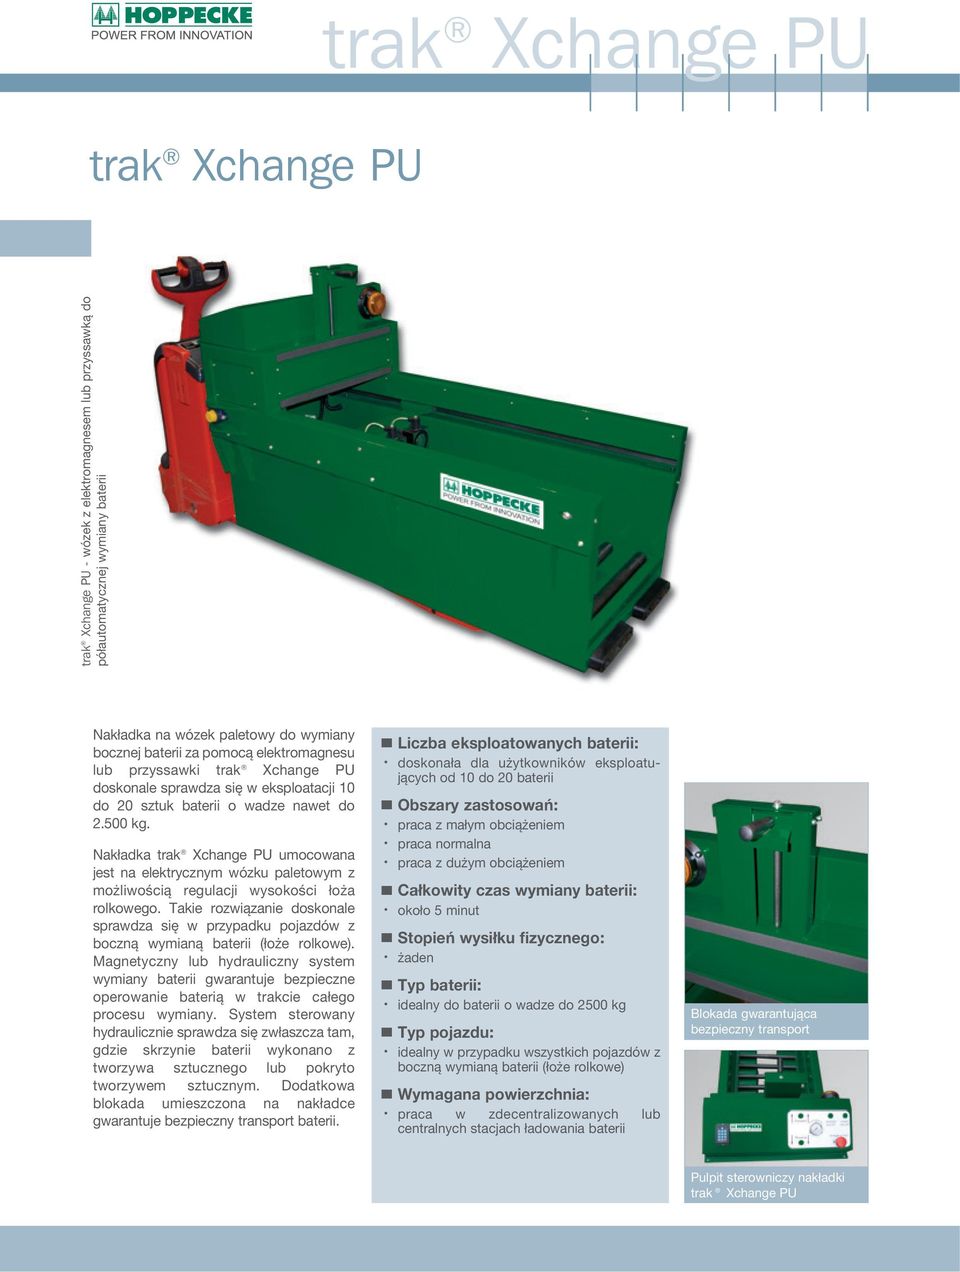 Nakładka trak Xchange PU umocowana jest na elektrycznym wózku paletowym z możliwością regulacji wysokości łoża rolkowego.